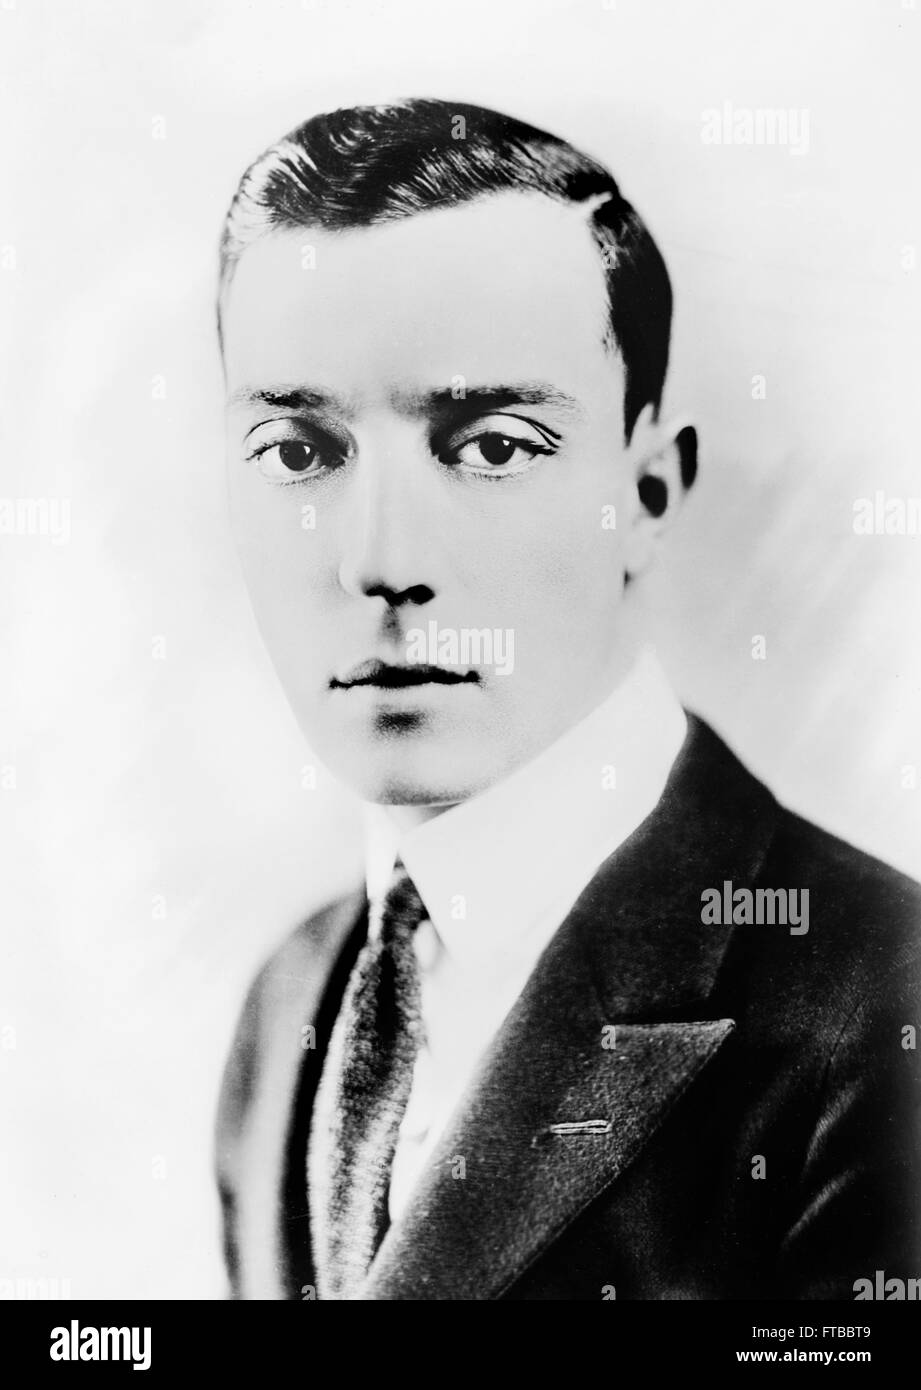 Ritratto del film muto star, Buster Keaton. Foto Stock